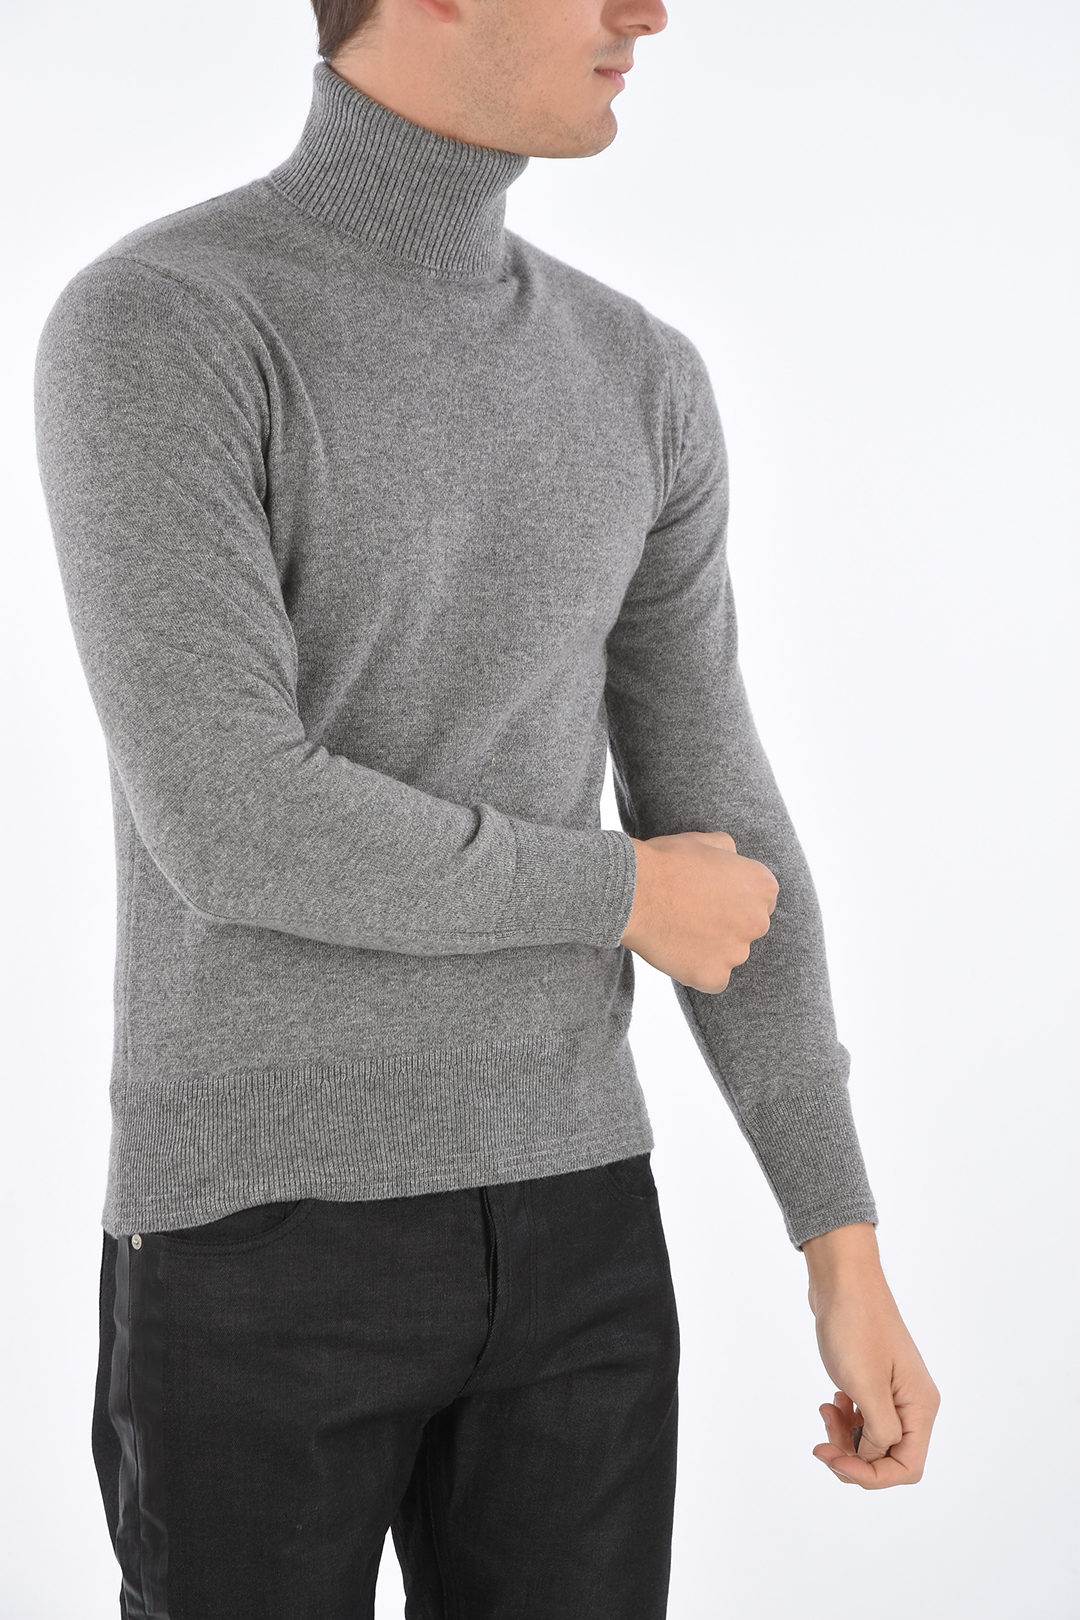 Tom Ford Turtleneck Cashmere Sweater men - Glamood Outlet